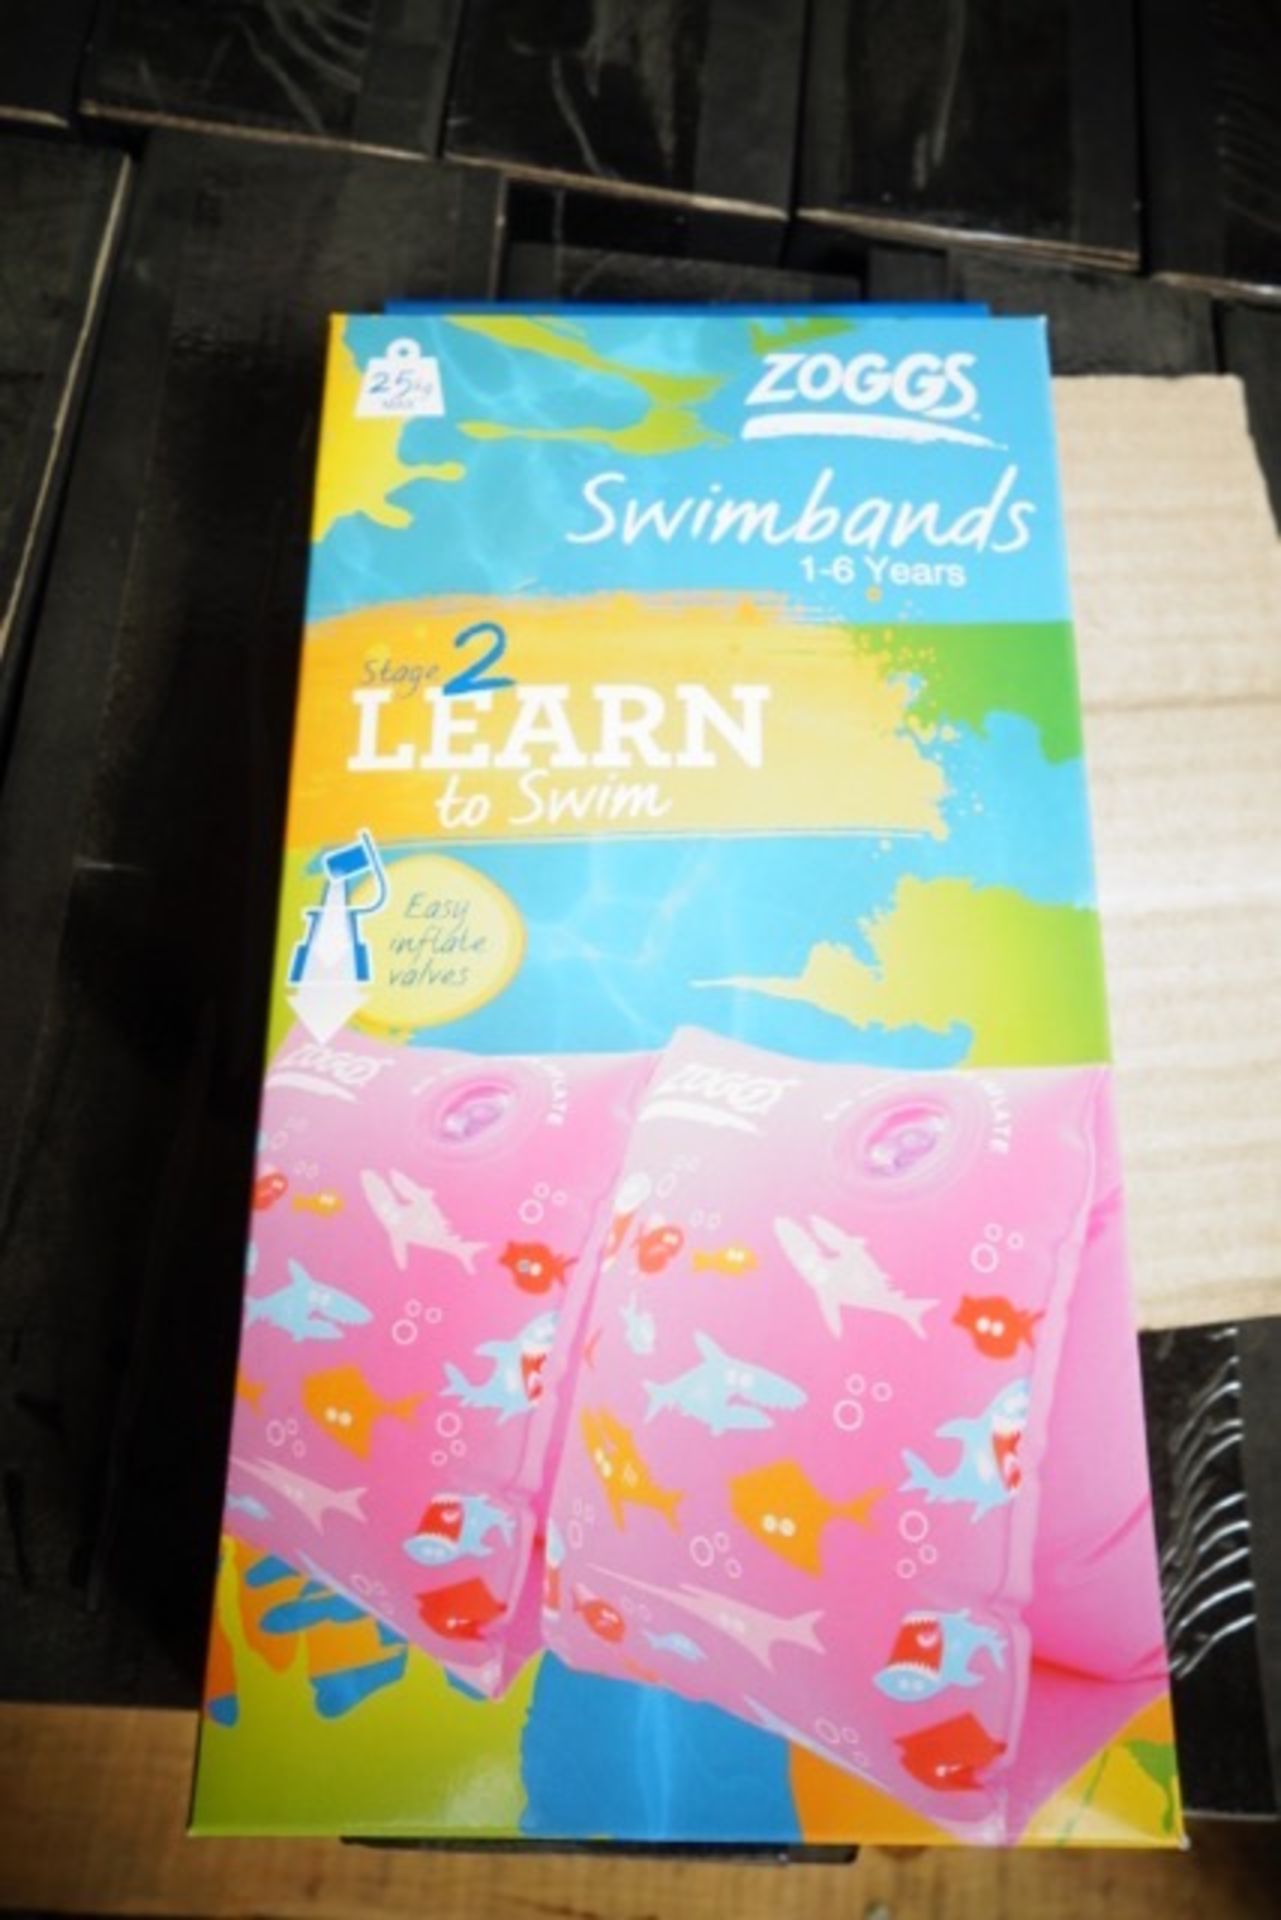 60 x Brand New Zoggs Learn 2 Swim Swimbands 1-6 years Pink Shark - Image 2 of 2